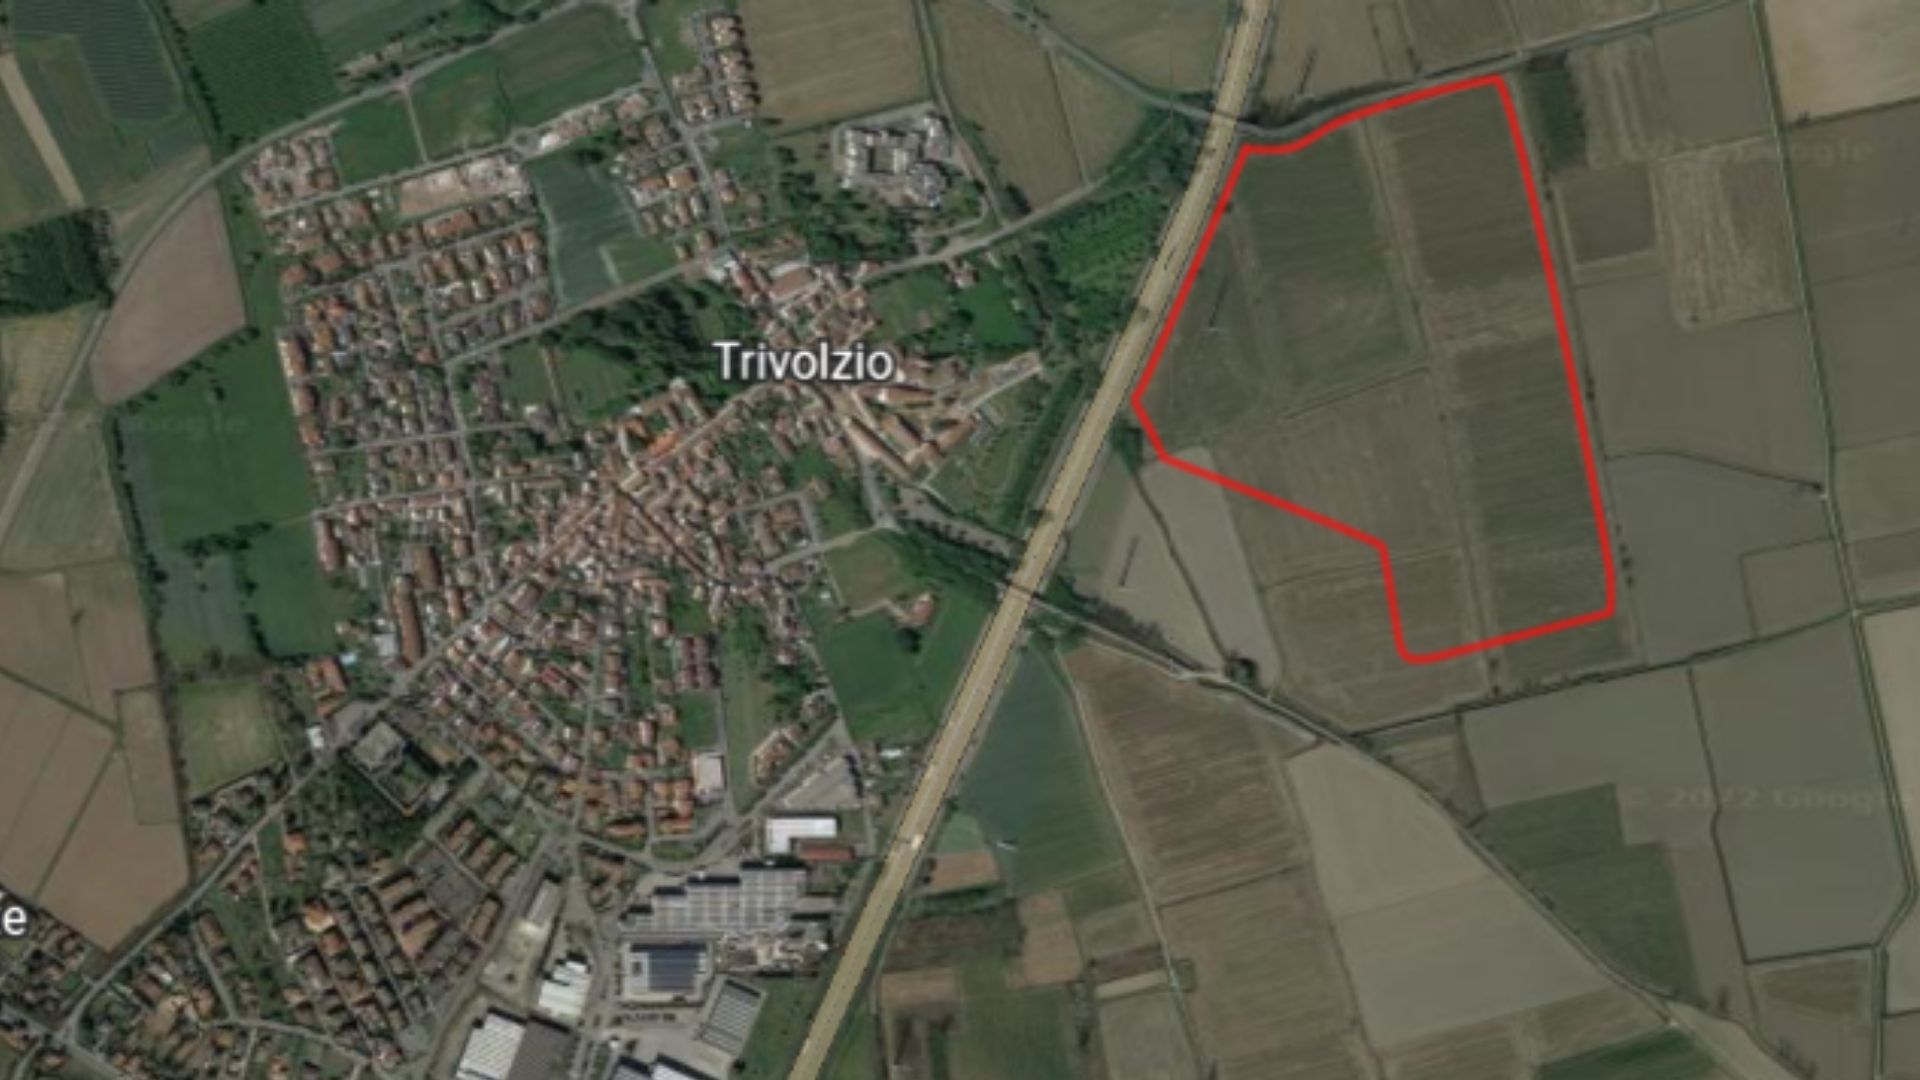 Polo logistico di Trivulzio (Pavia)